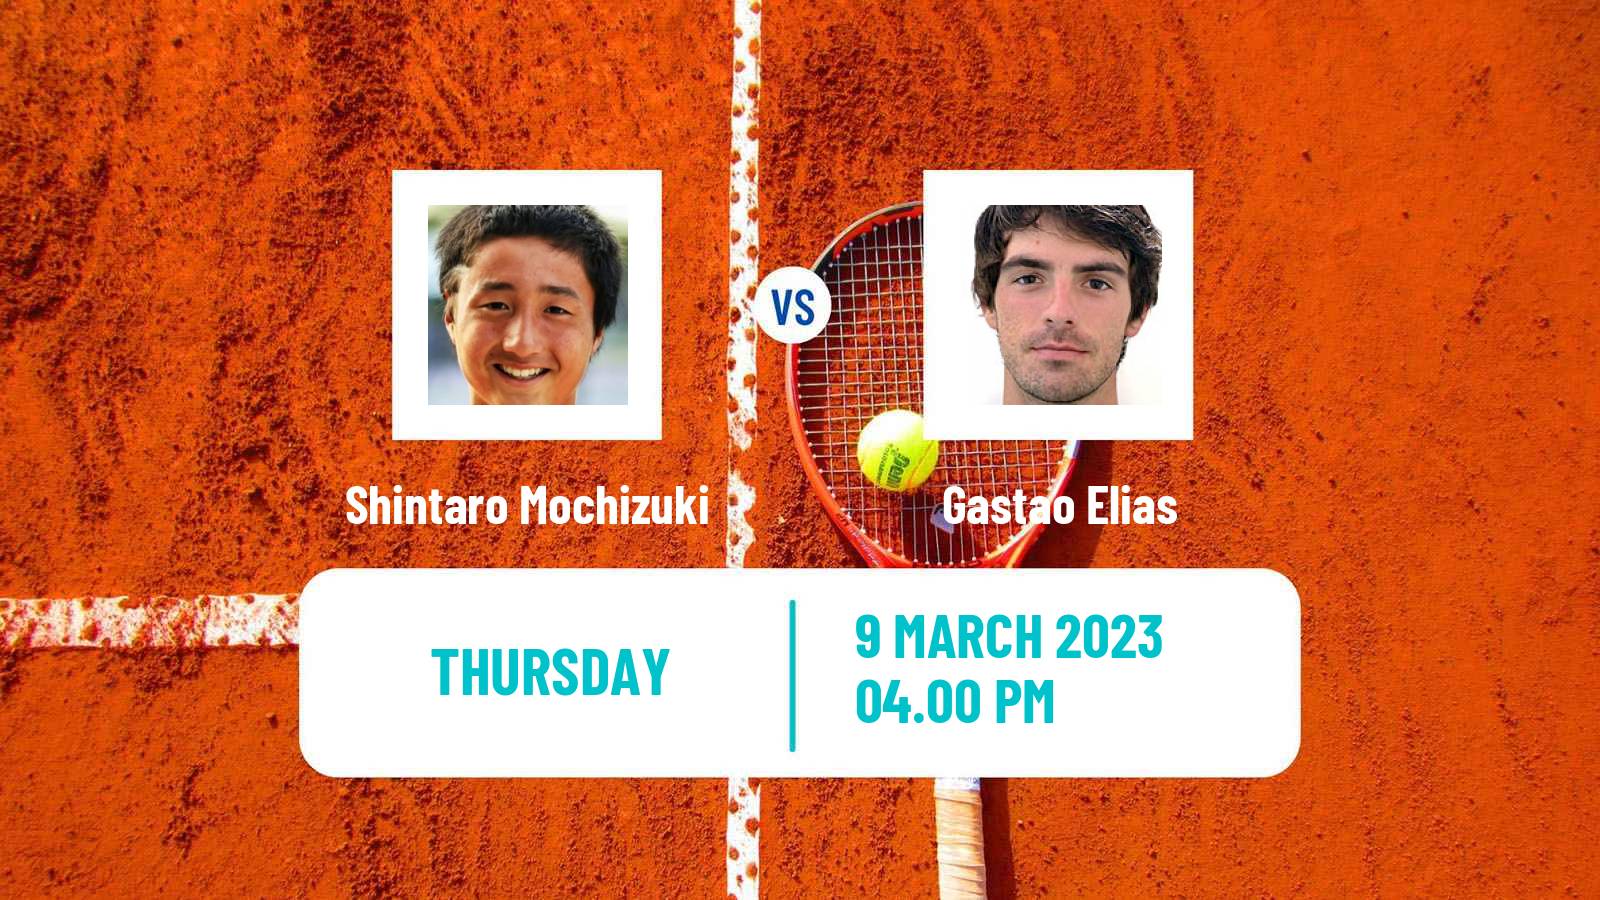 Tennis ATP Challenger Shintaro Mochizuki - Gastao Elias